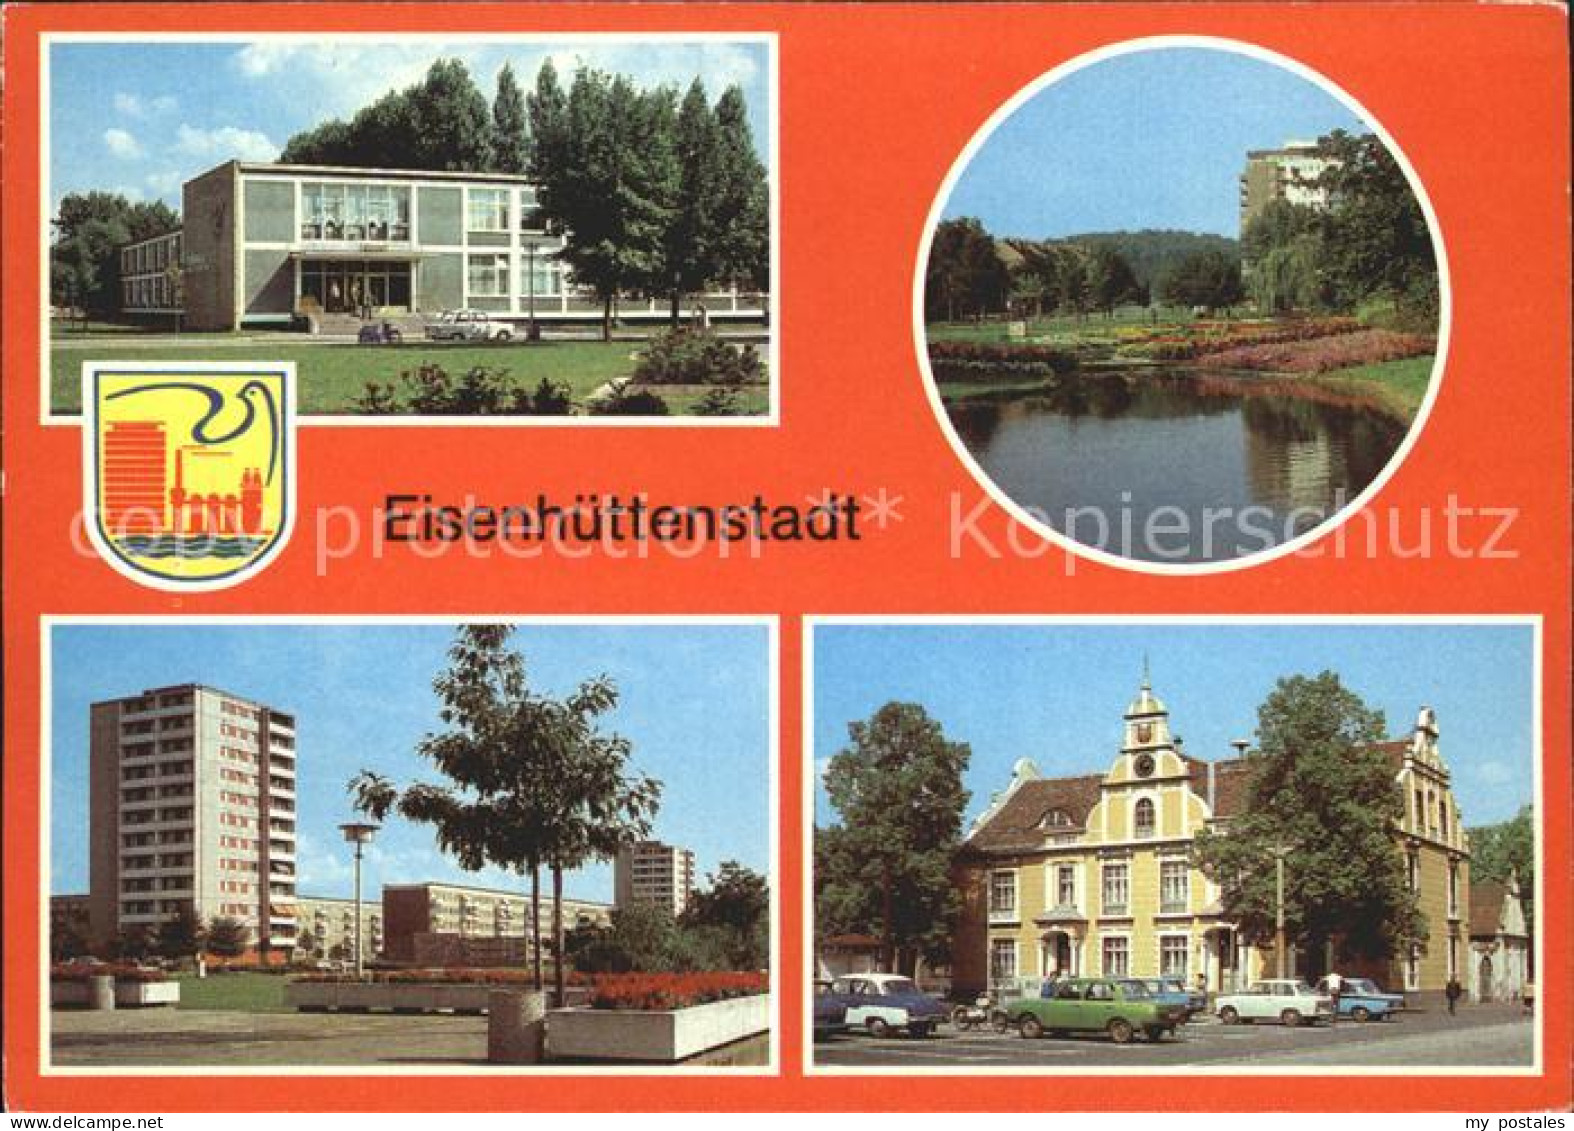 72286145 Eisenhuettenstadt Diehloer Strasse Lilienthal- Ring Marx- Engels- Platz - Eisenhuettenstadt